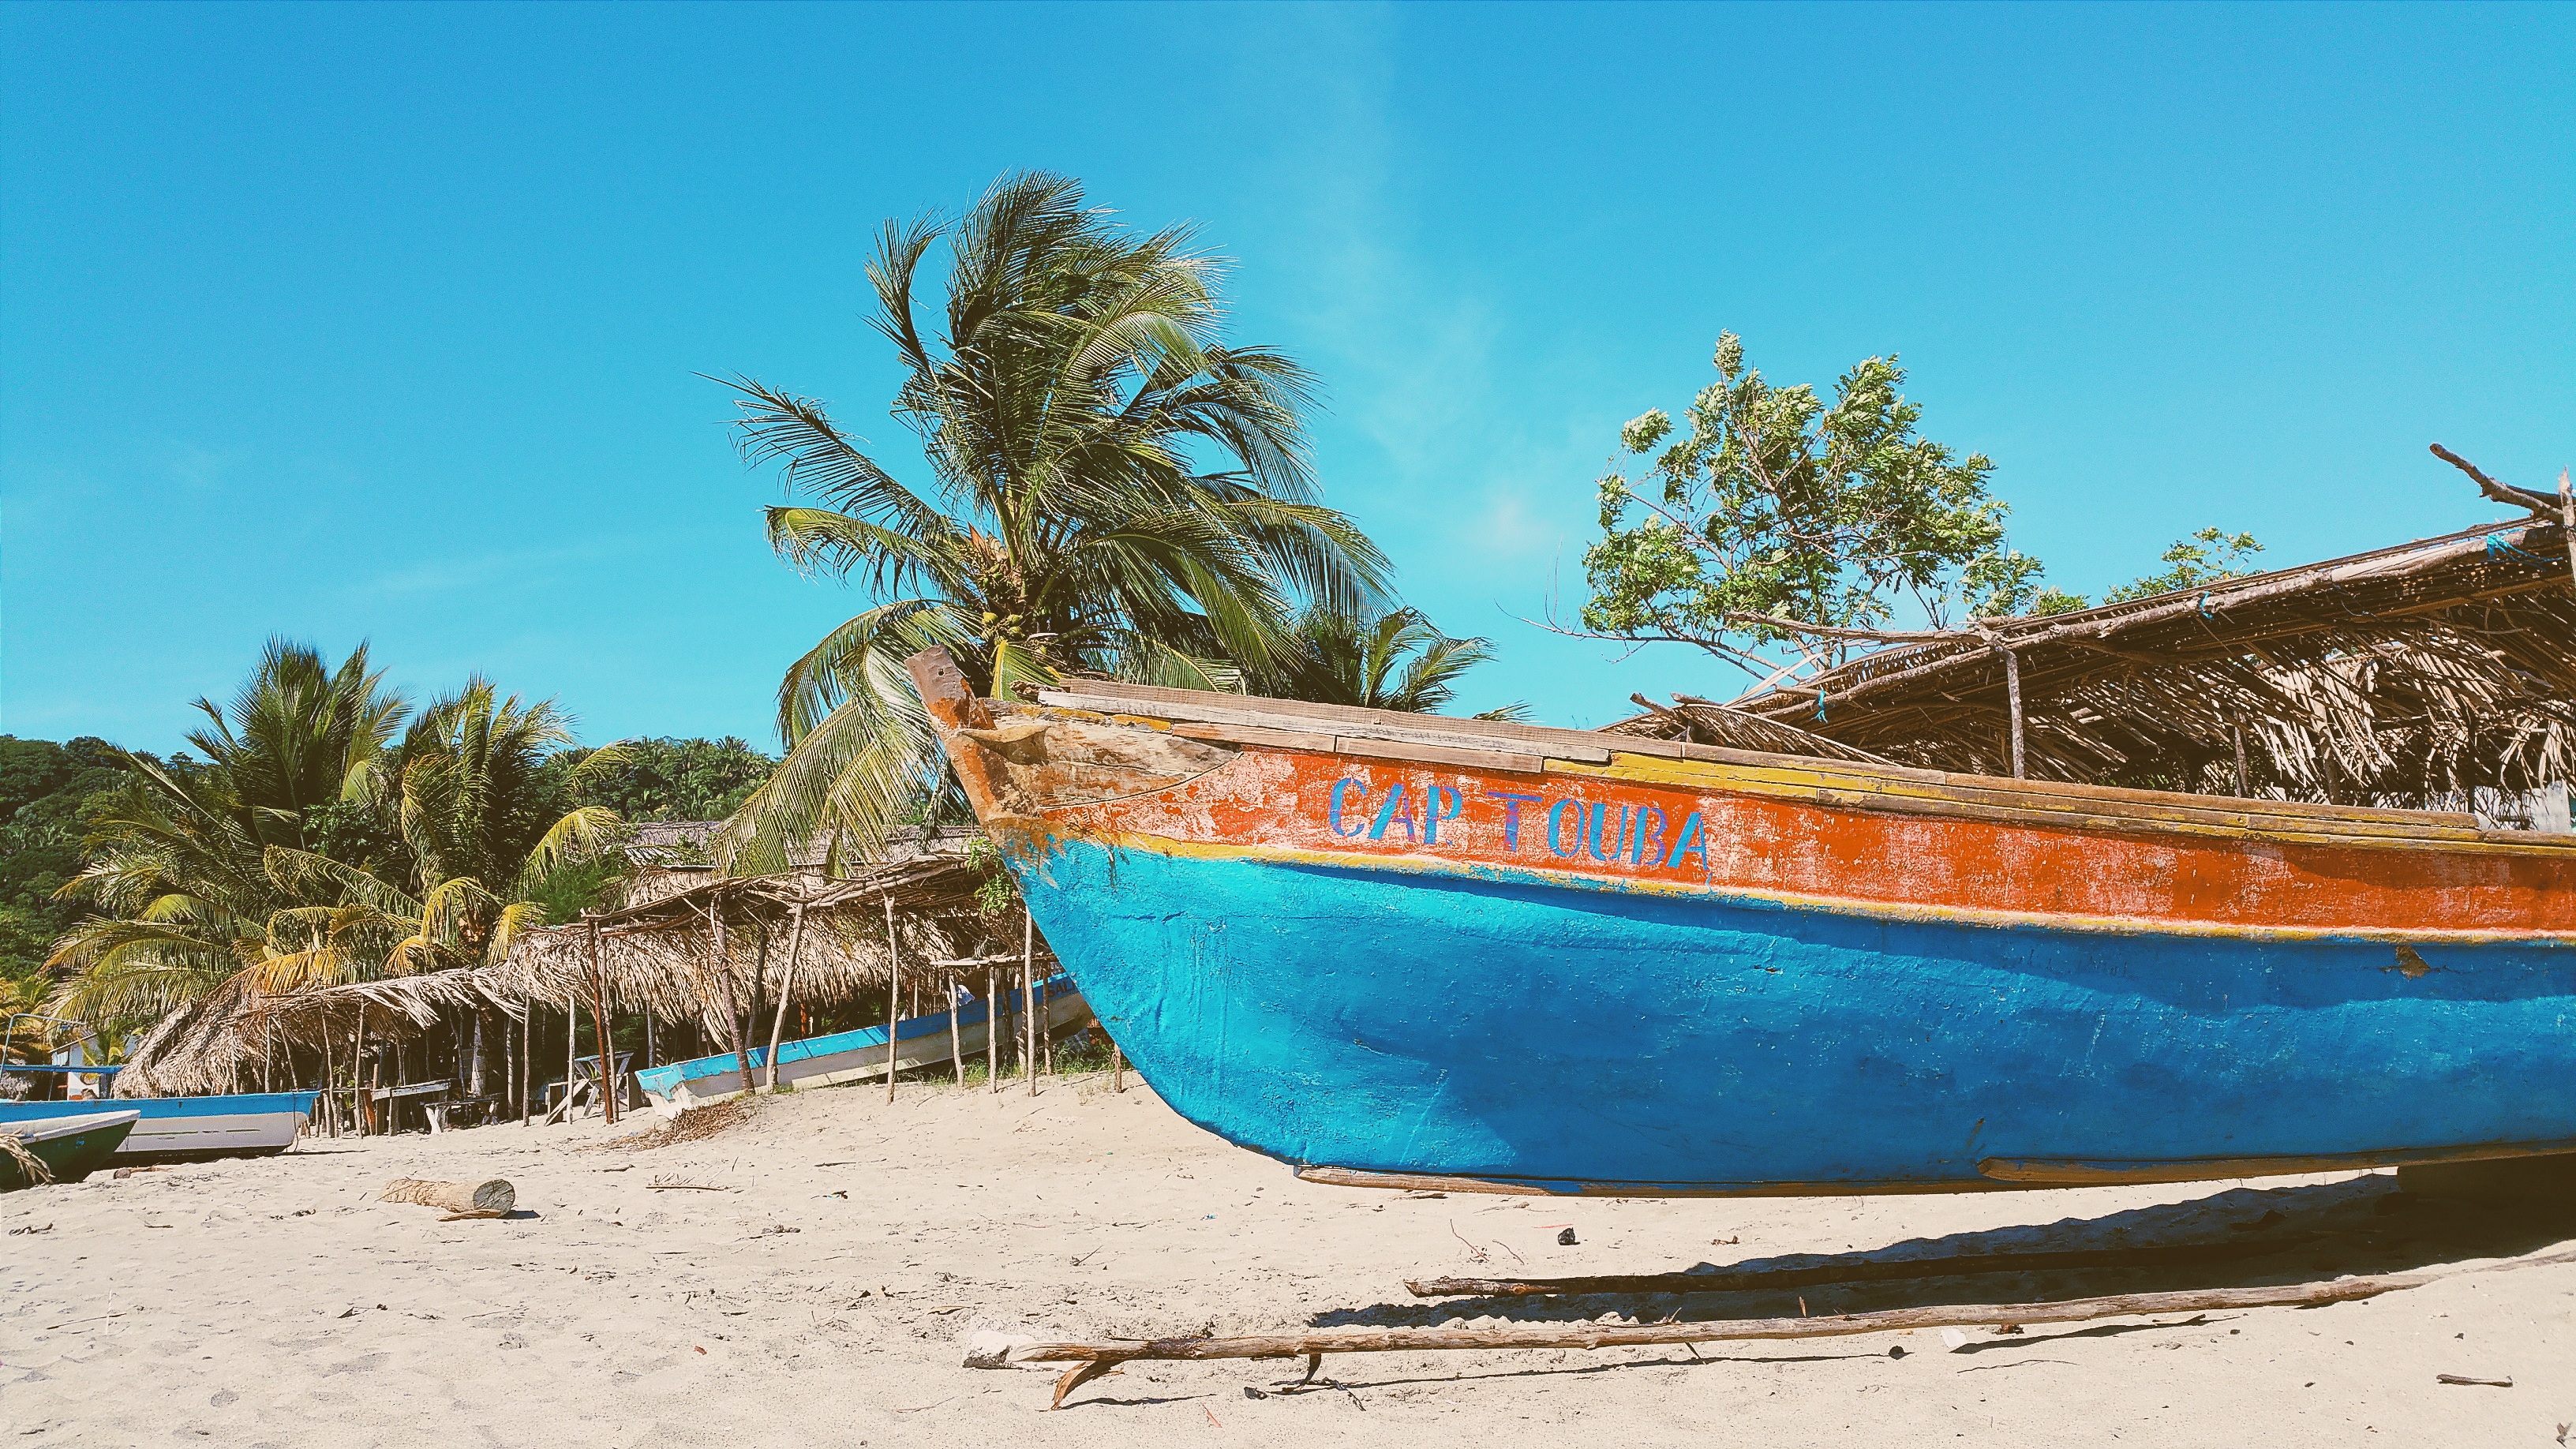 Бесплатное фото Старая заброшенная лодка на пляже с пальмами